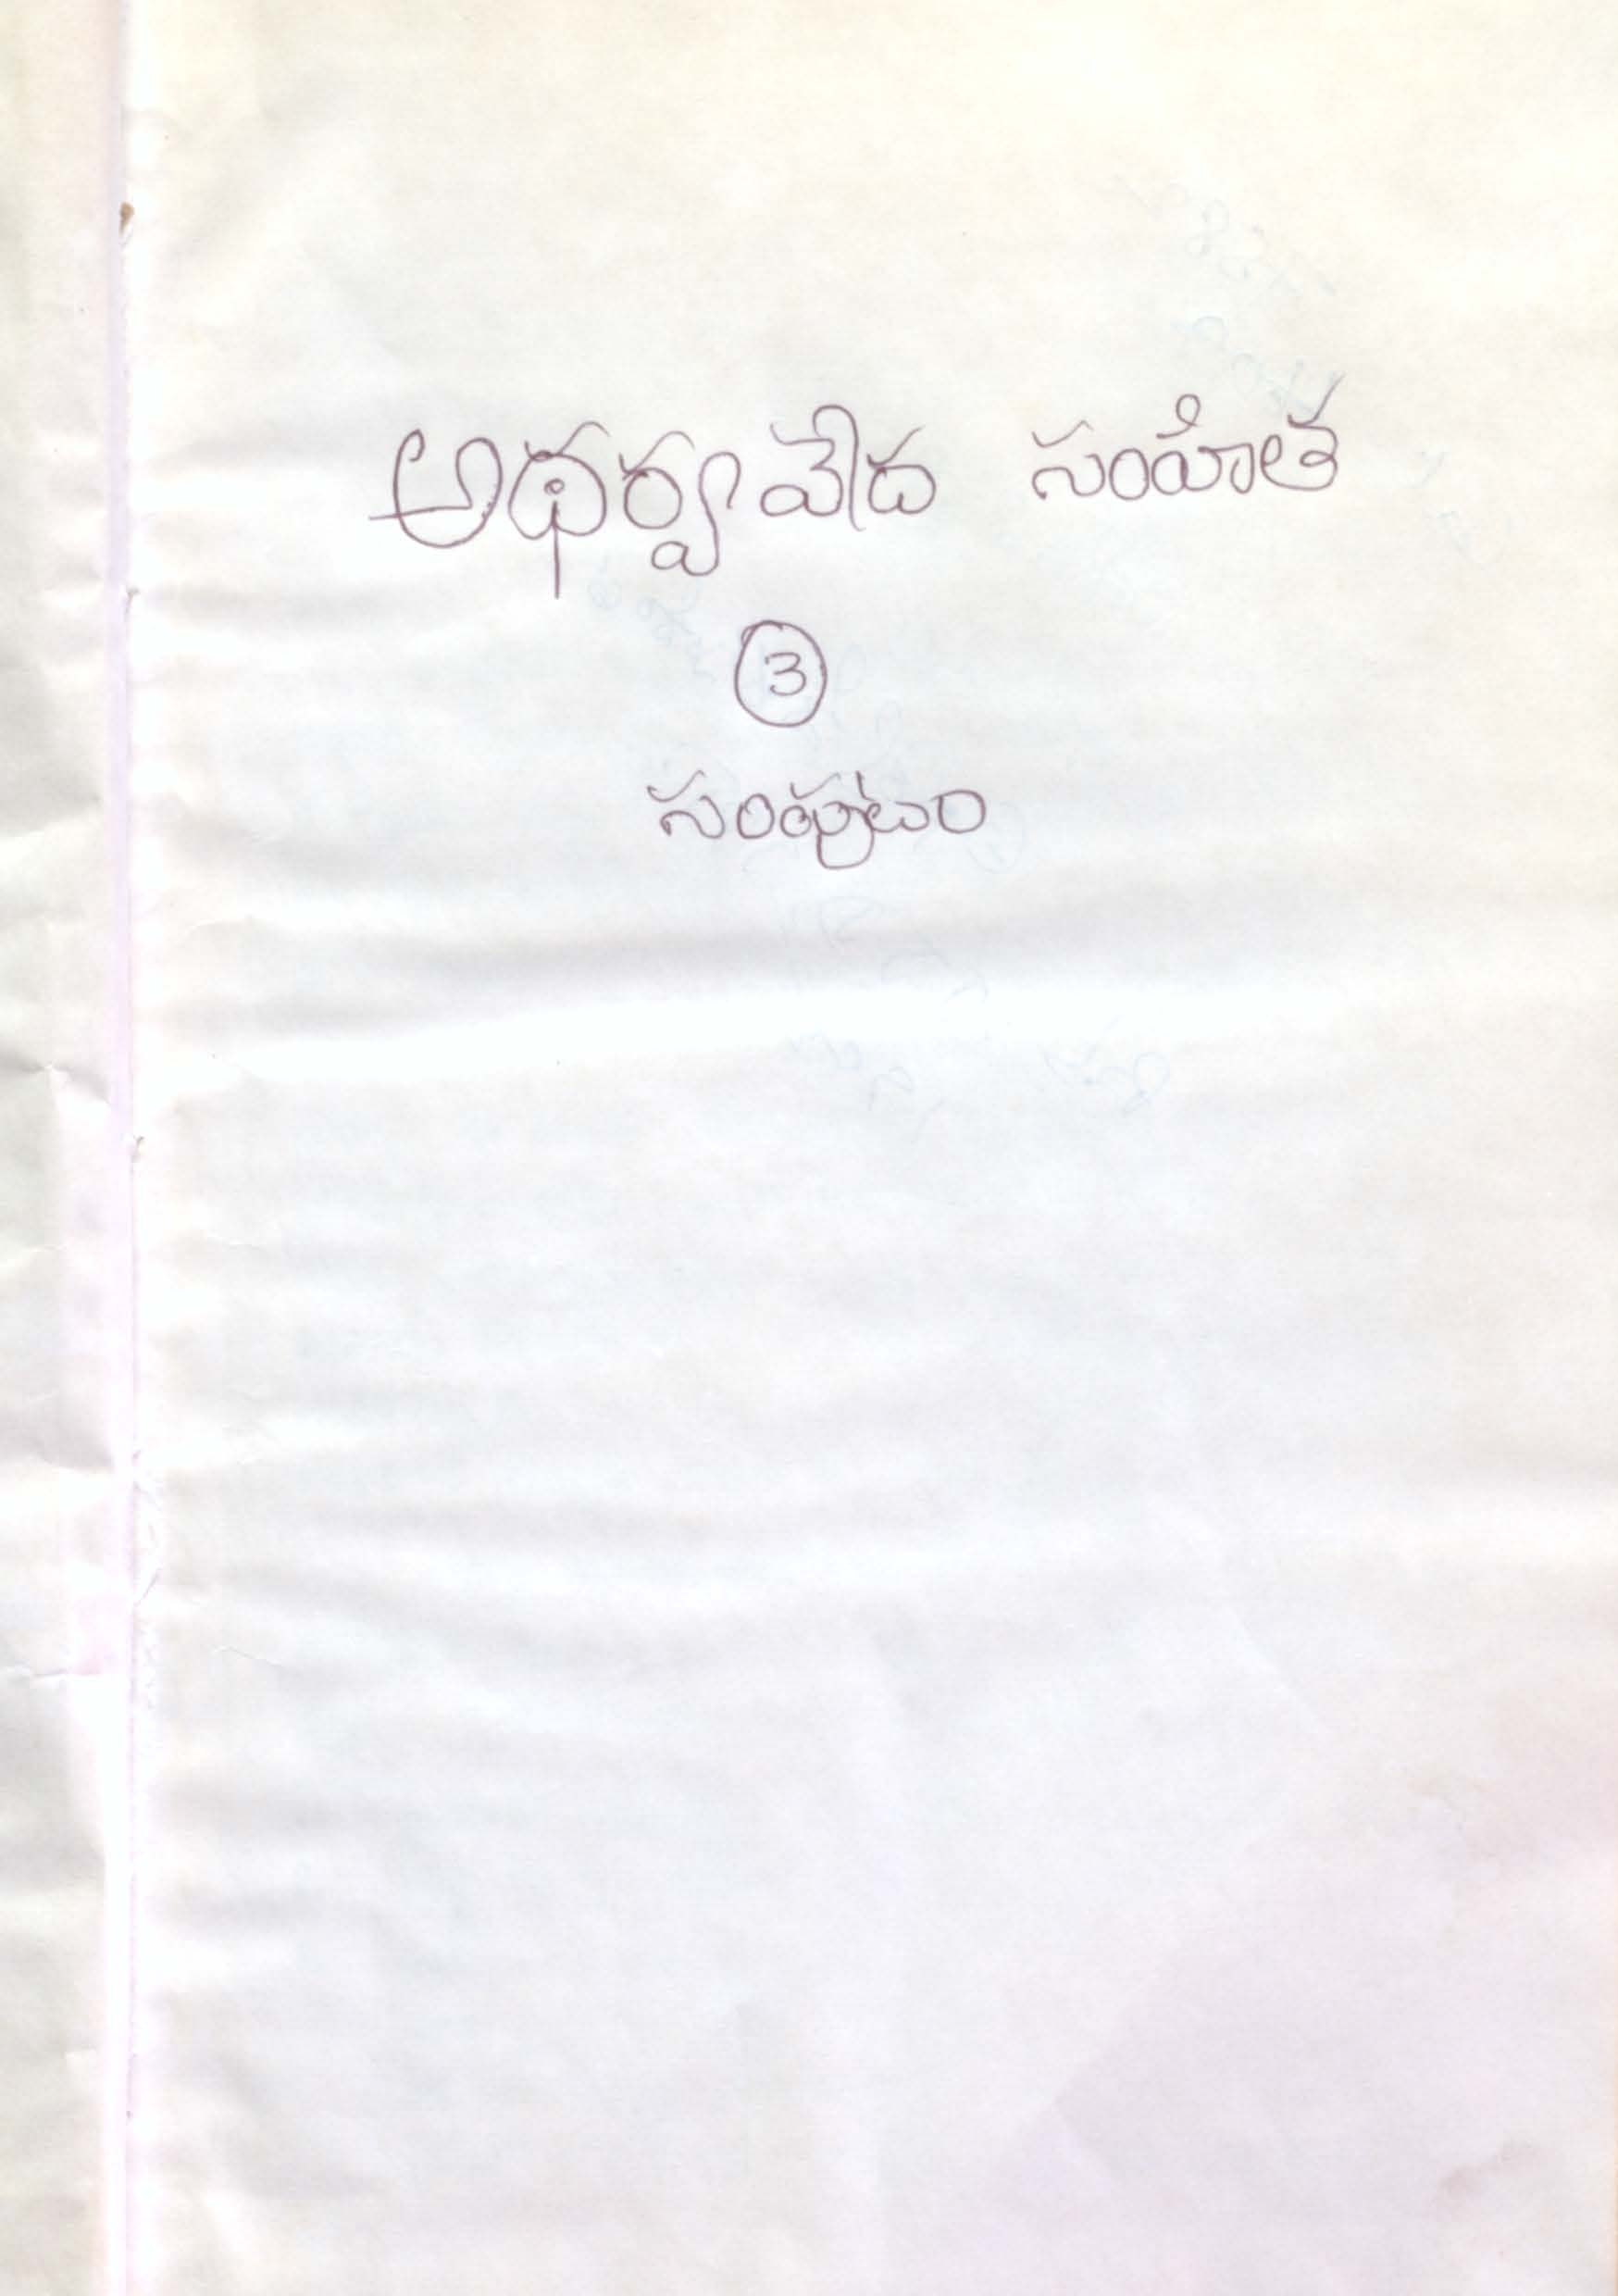 Atharvavedha samhitha (Samputam-3)